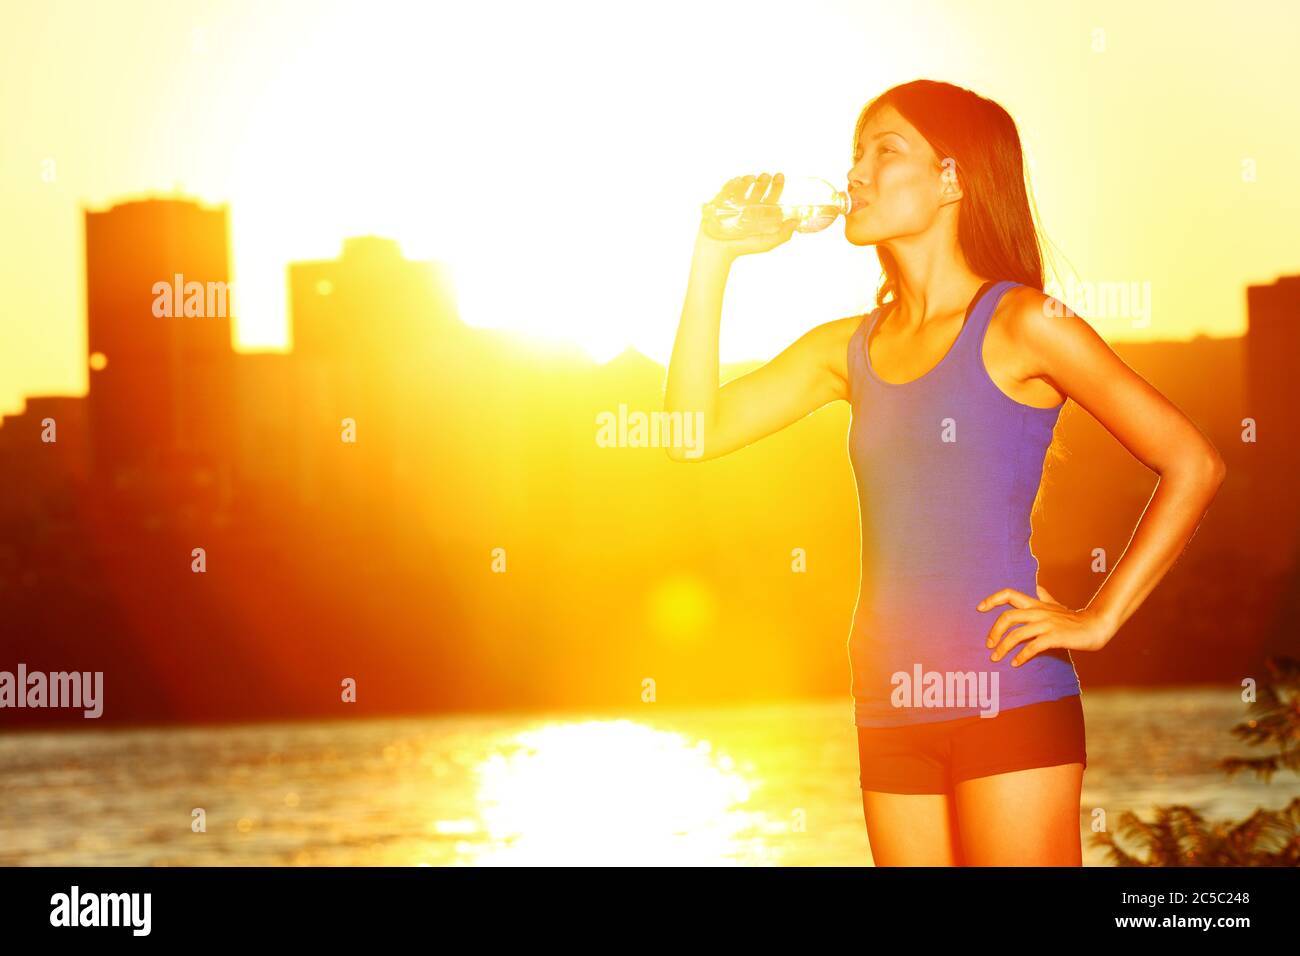 Femme buvant de l'eau après avoir fait du jogging. Une athlète féminine profite du soleil et se fait boire à la bouteille d'eau après avoir fait de l'exercice en plein soleil. Modèle de forme physique multiracial asiatique / caucasien fille Banque D'Images